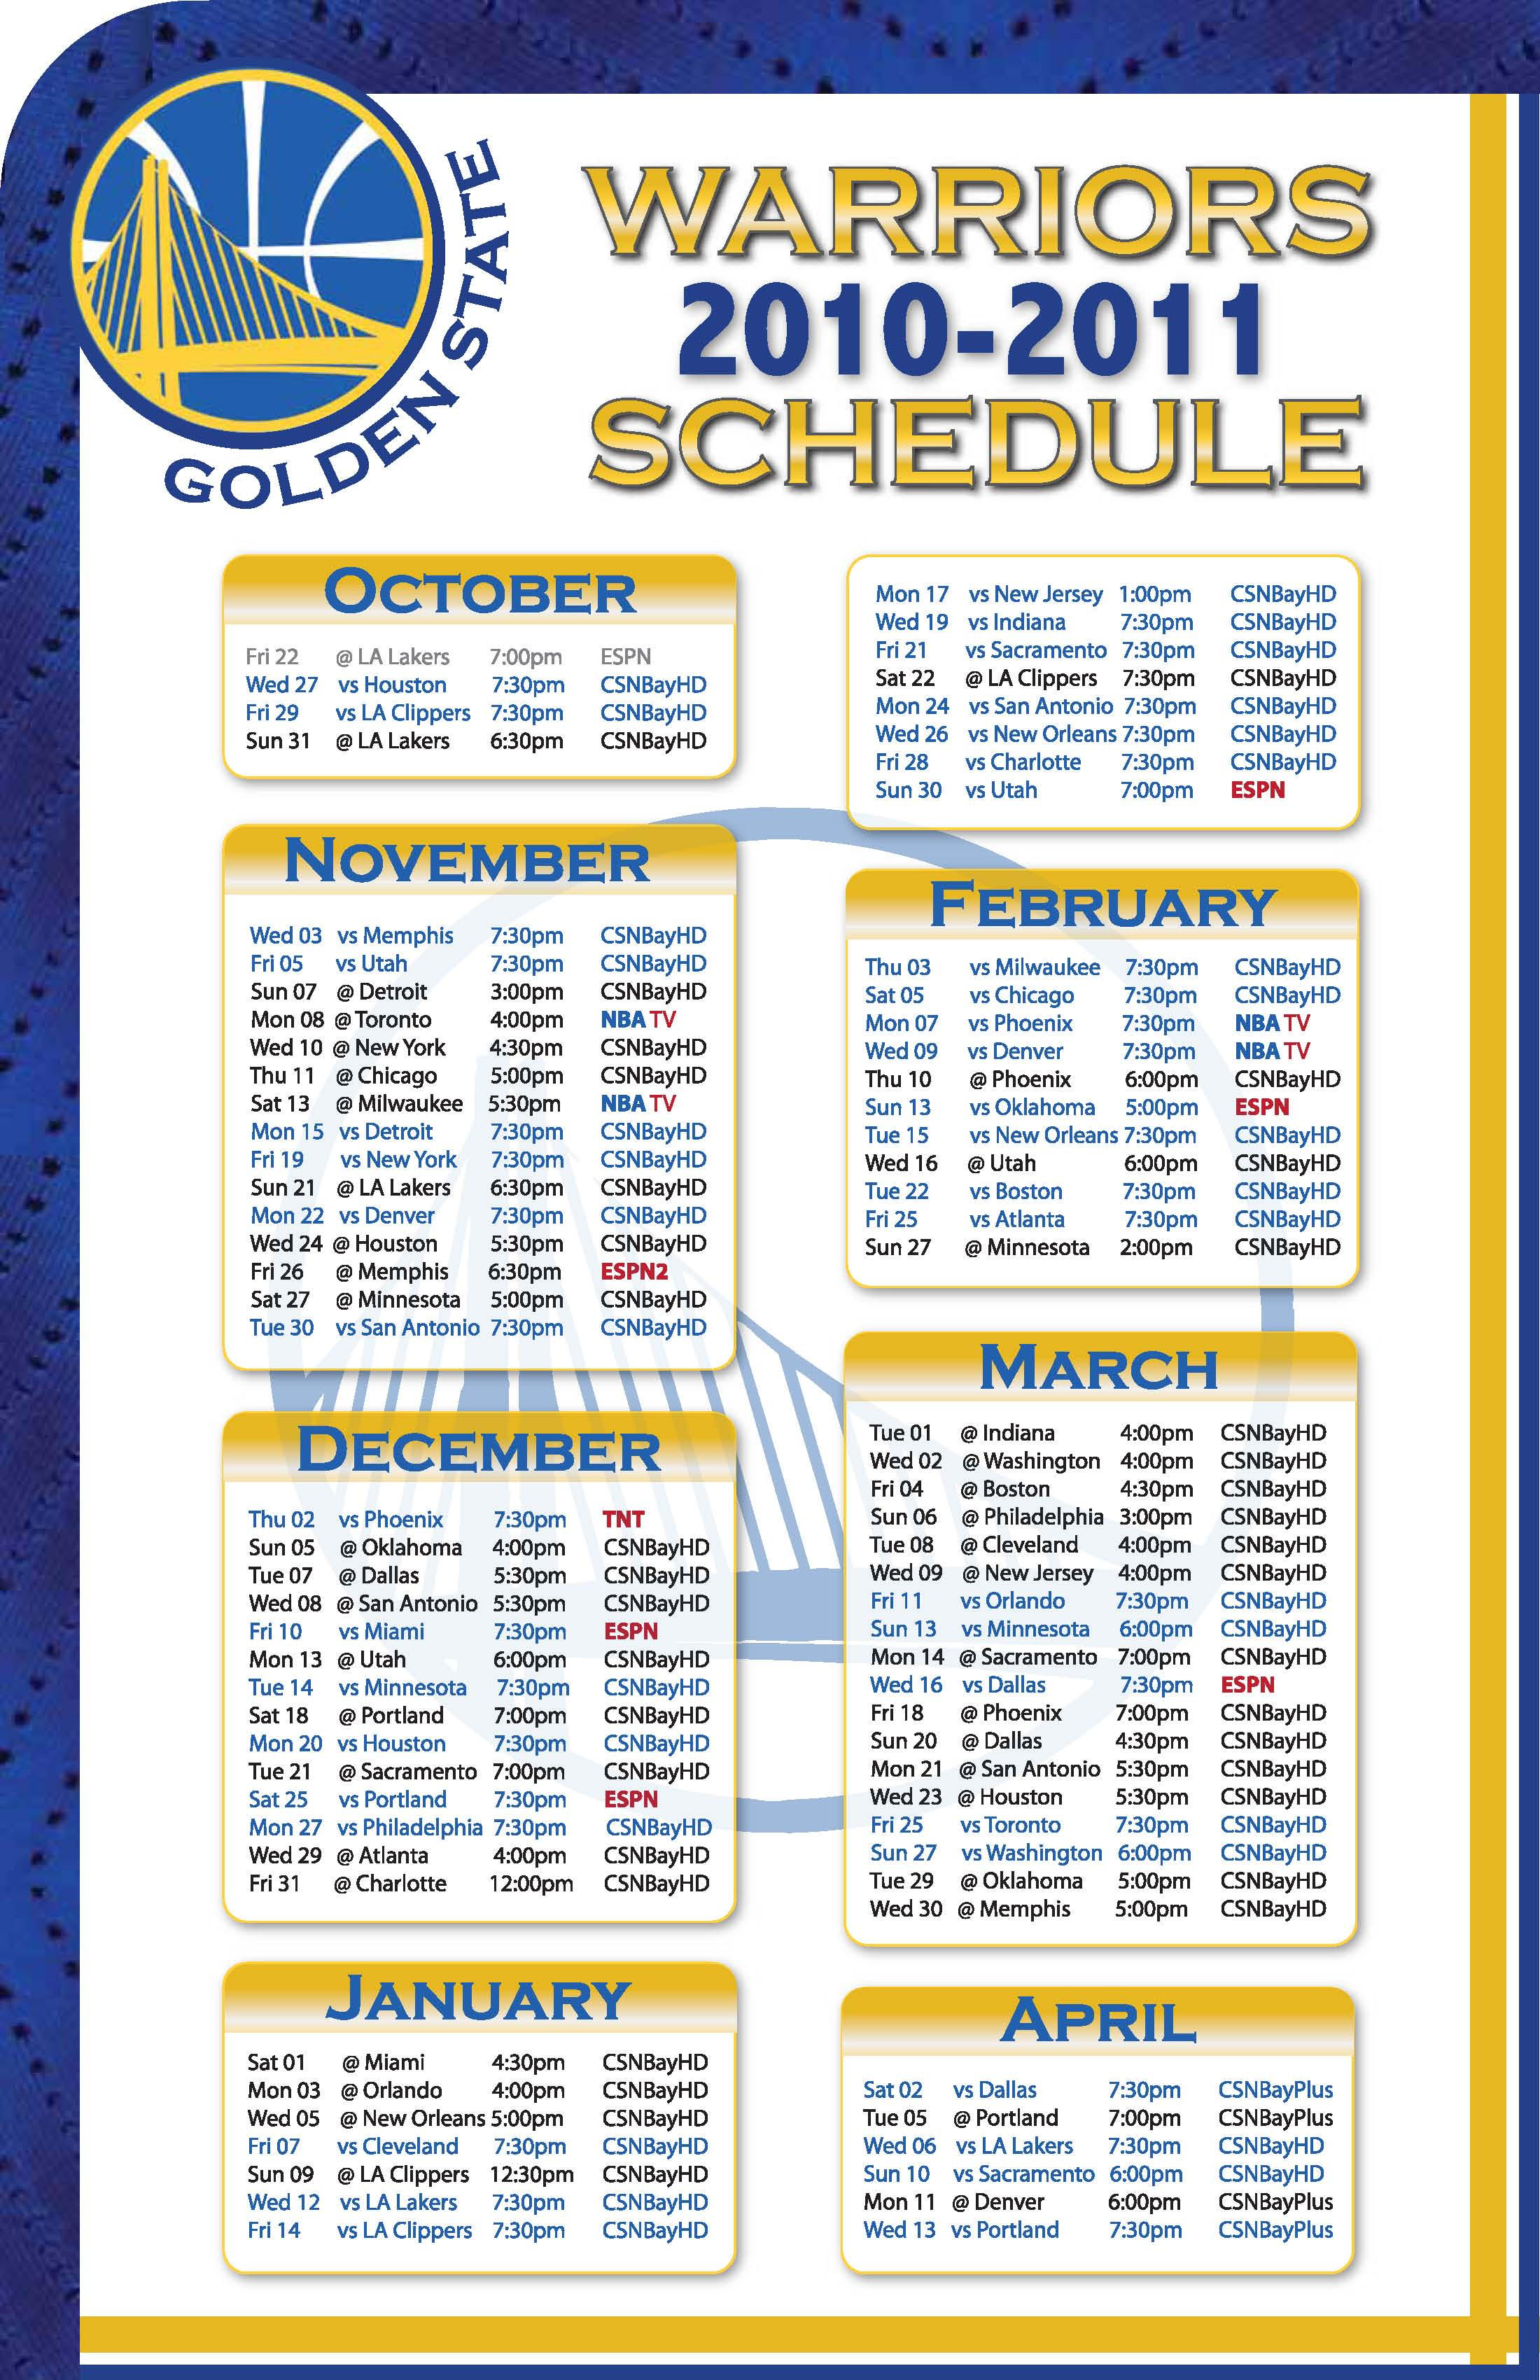 Golden State Warriors Schedule by MysticAzian on DeviantArt